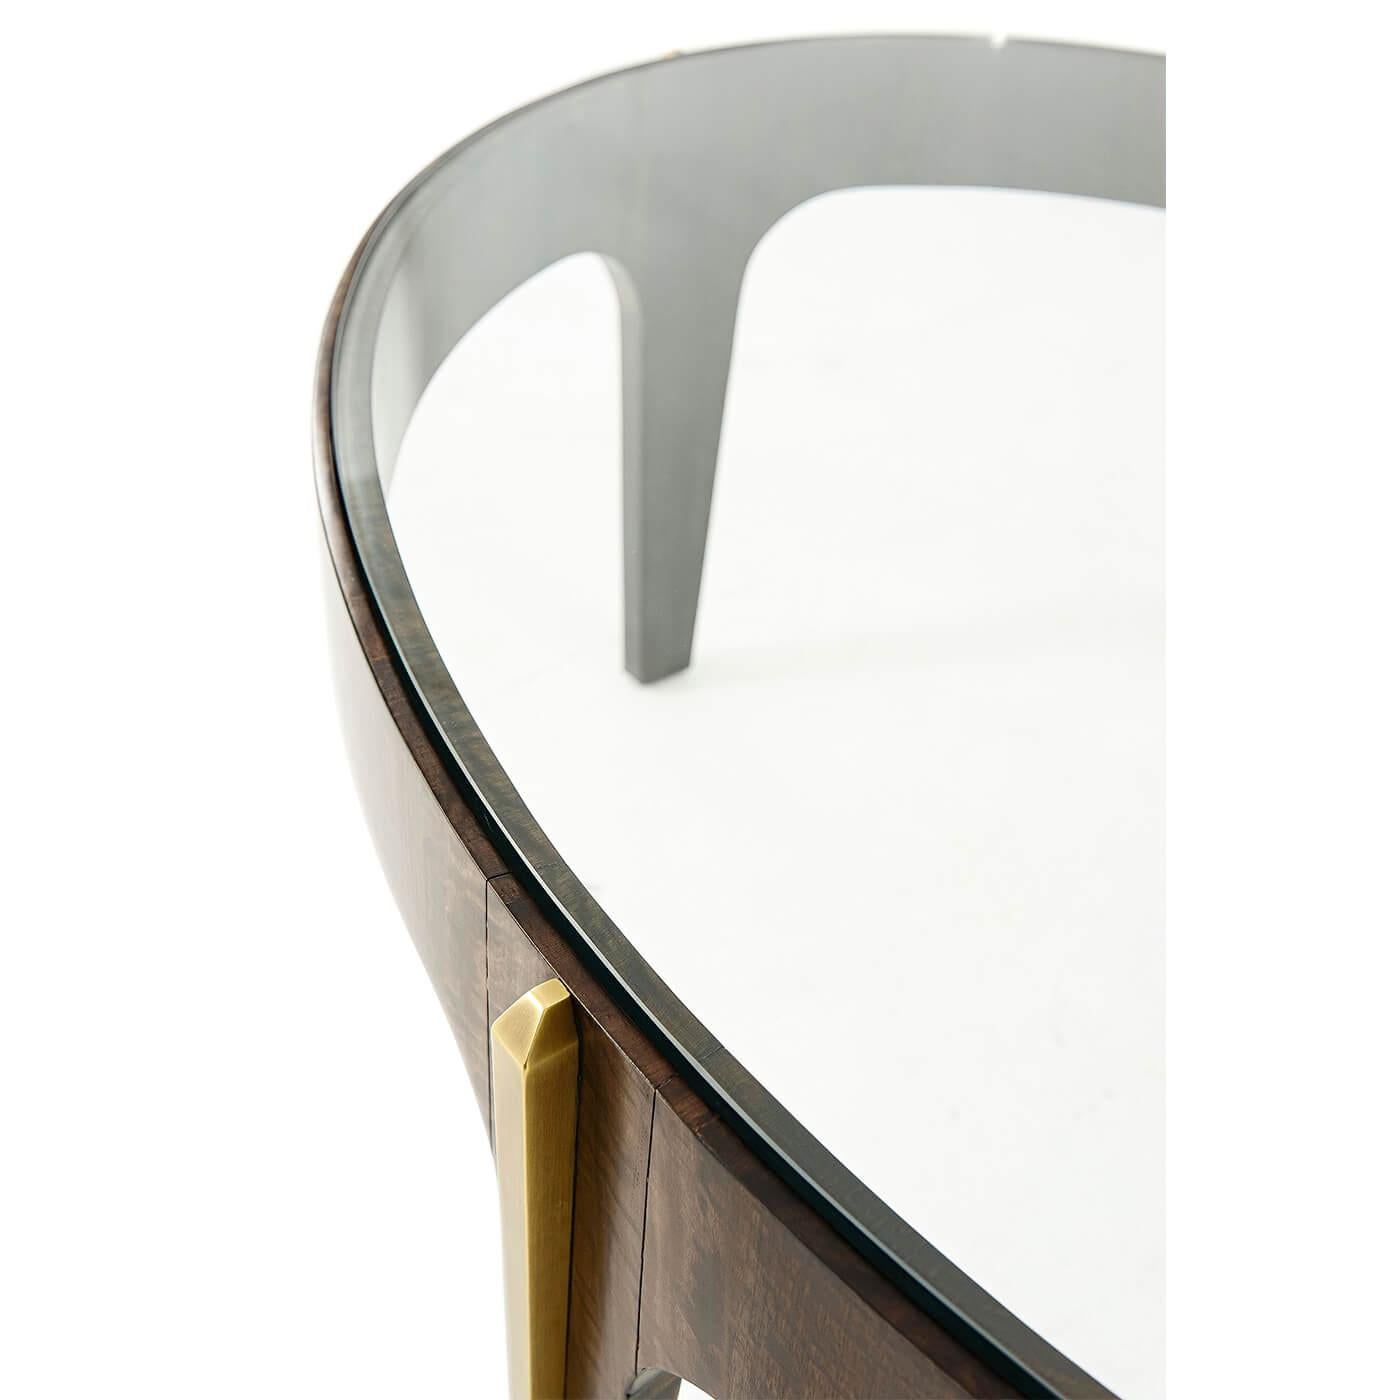 Une table de cocktail ovale de style Art Déco montée sur laiton, le plateau ovale en verre trempé dans une frise en placage, les pieds légèrement effilés avec des moulures en laiton. 

Dimensions : 48